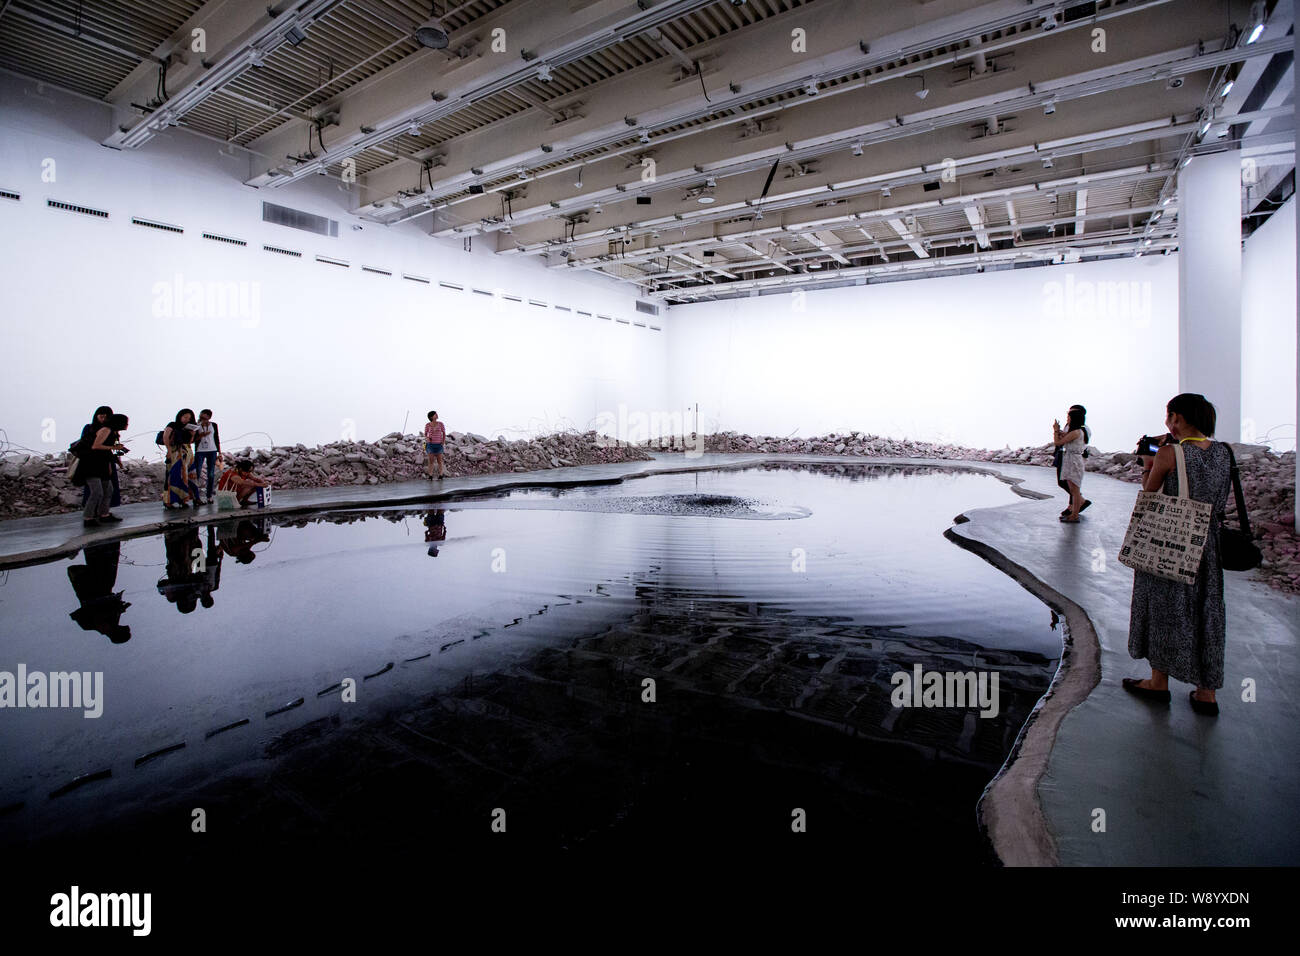 Das Artwork, Silent Tinte, eine Installation eines 250 Quadratmeter großen See aus der Galerie Stock mit 20.000 Liter Tinte schwarz gefüllt ausgegraben, die von Chin Stockfoto